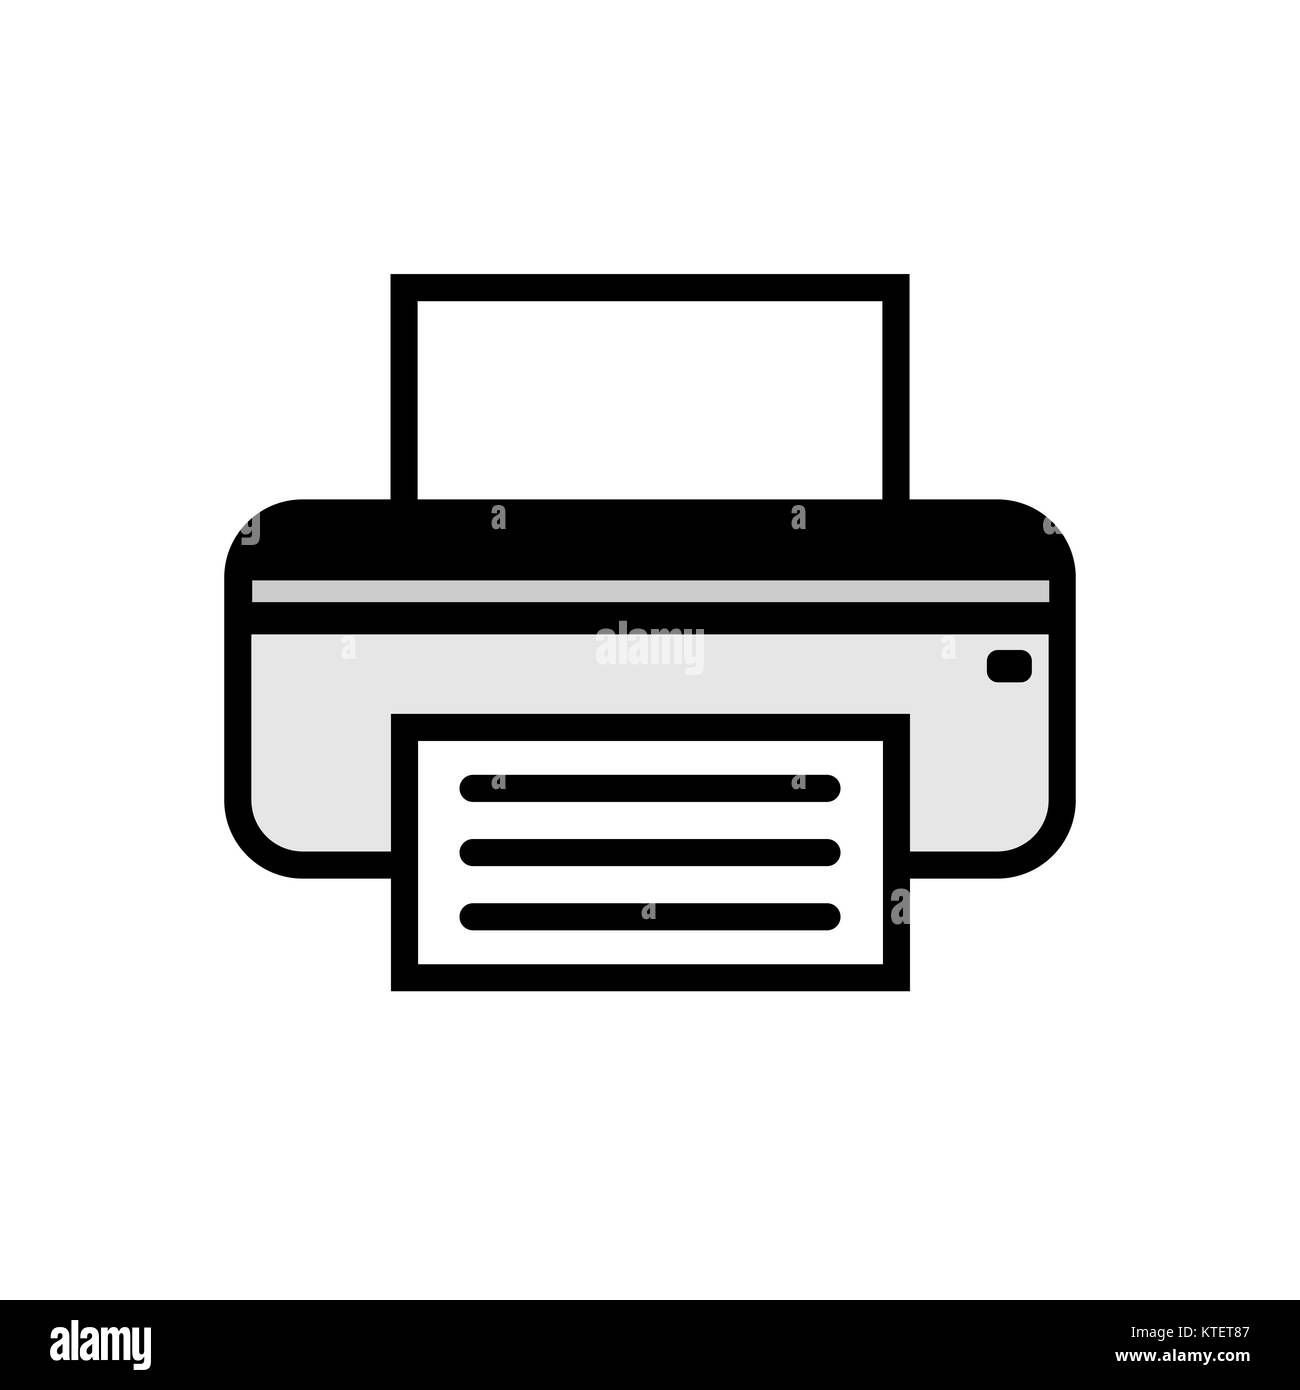 Fax icon Banque d'images détourées - Alamy